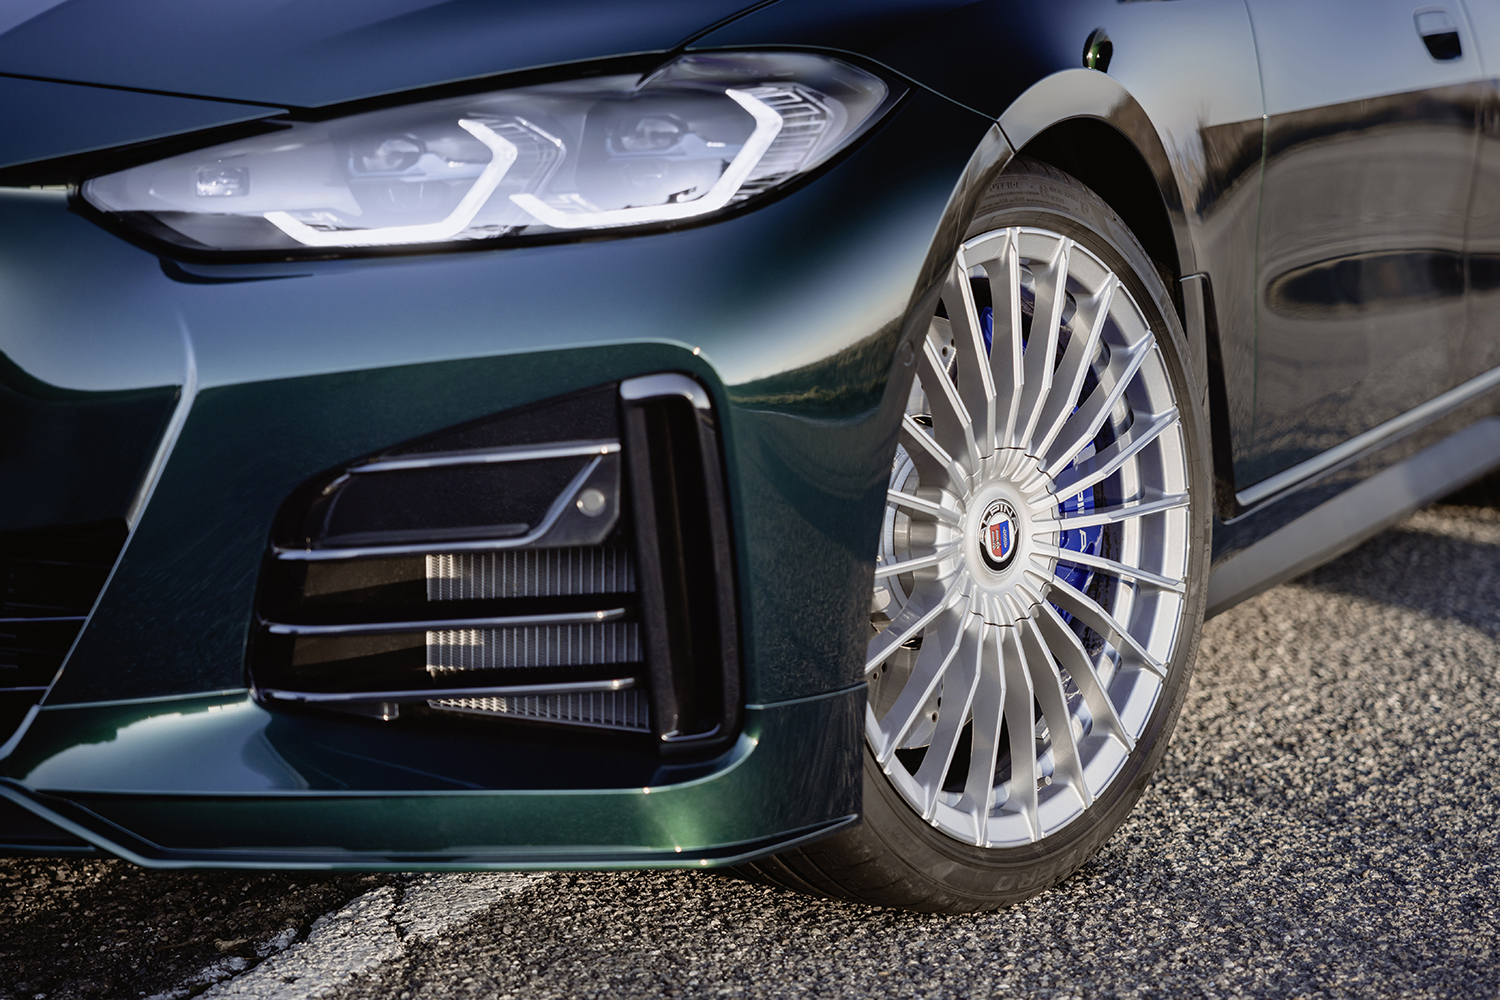 BMWアルピナ D4 S グランクーペのタイヤとホイールの写真